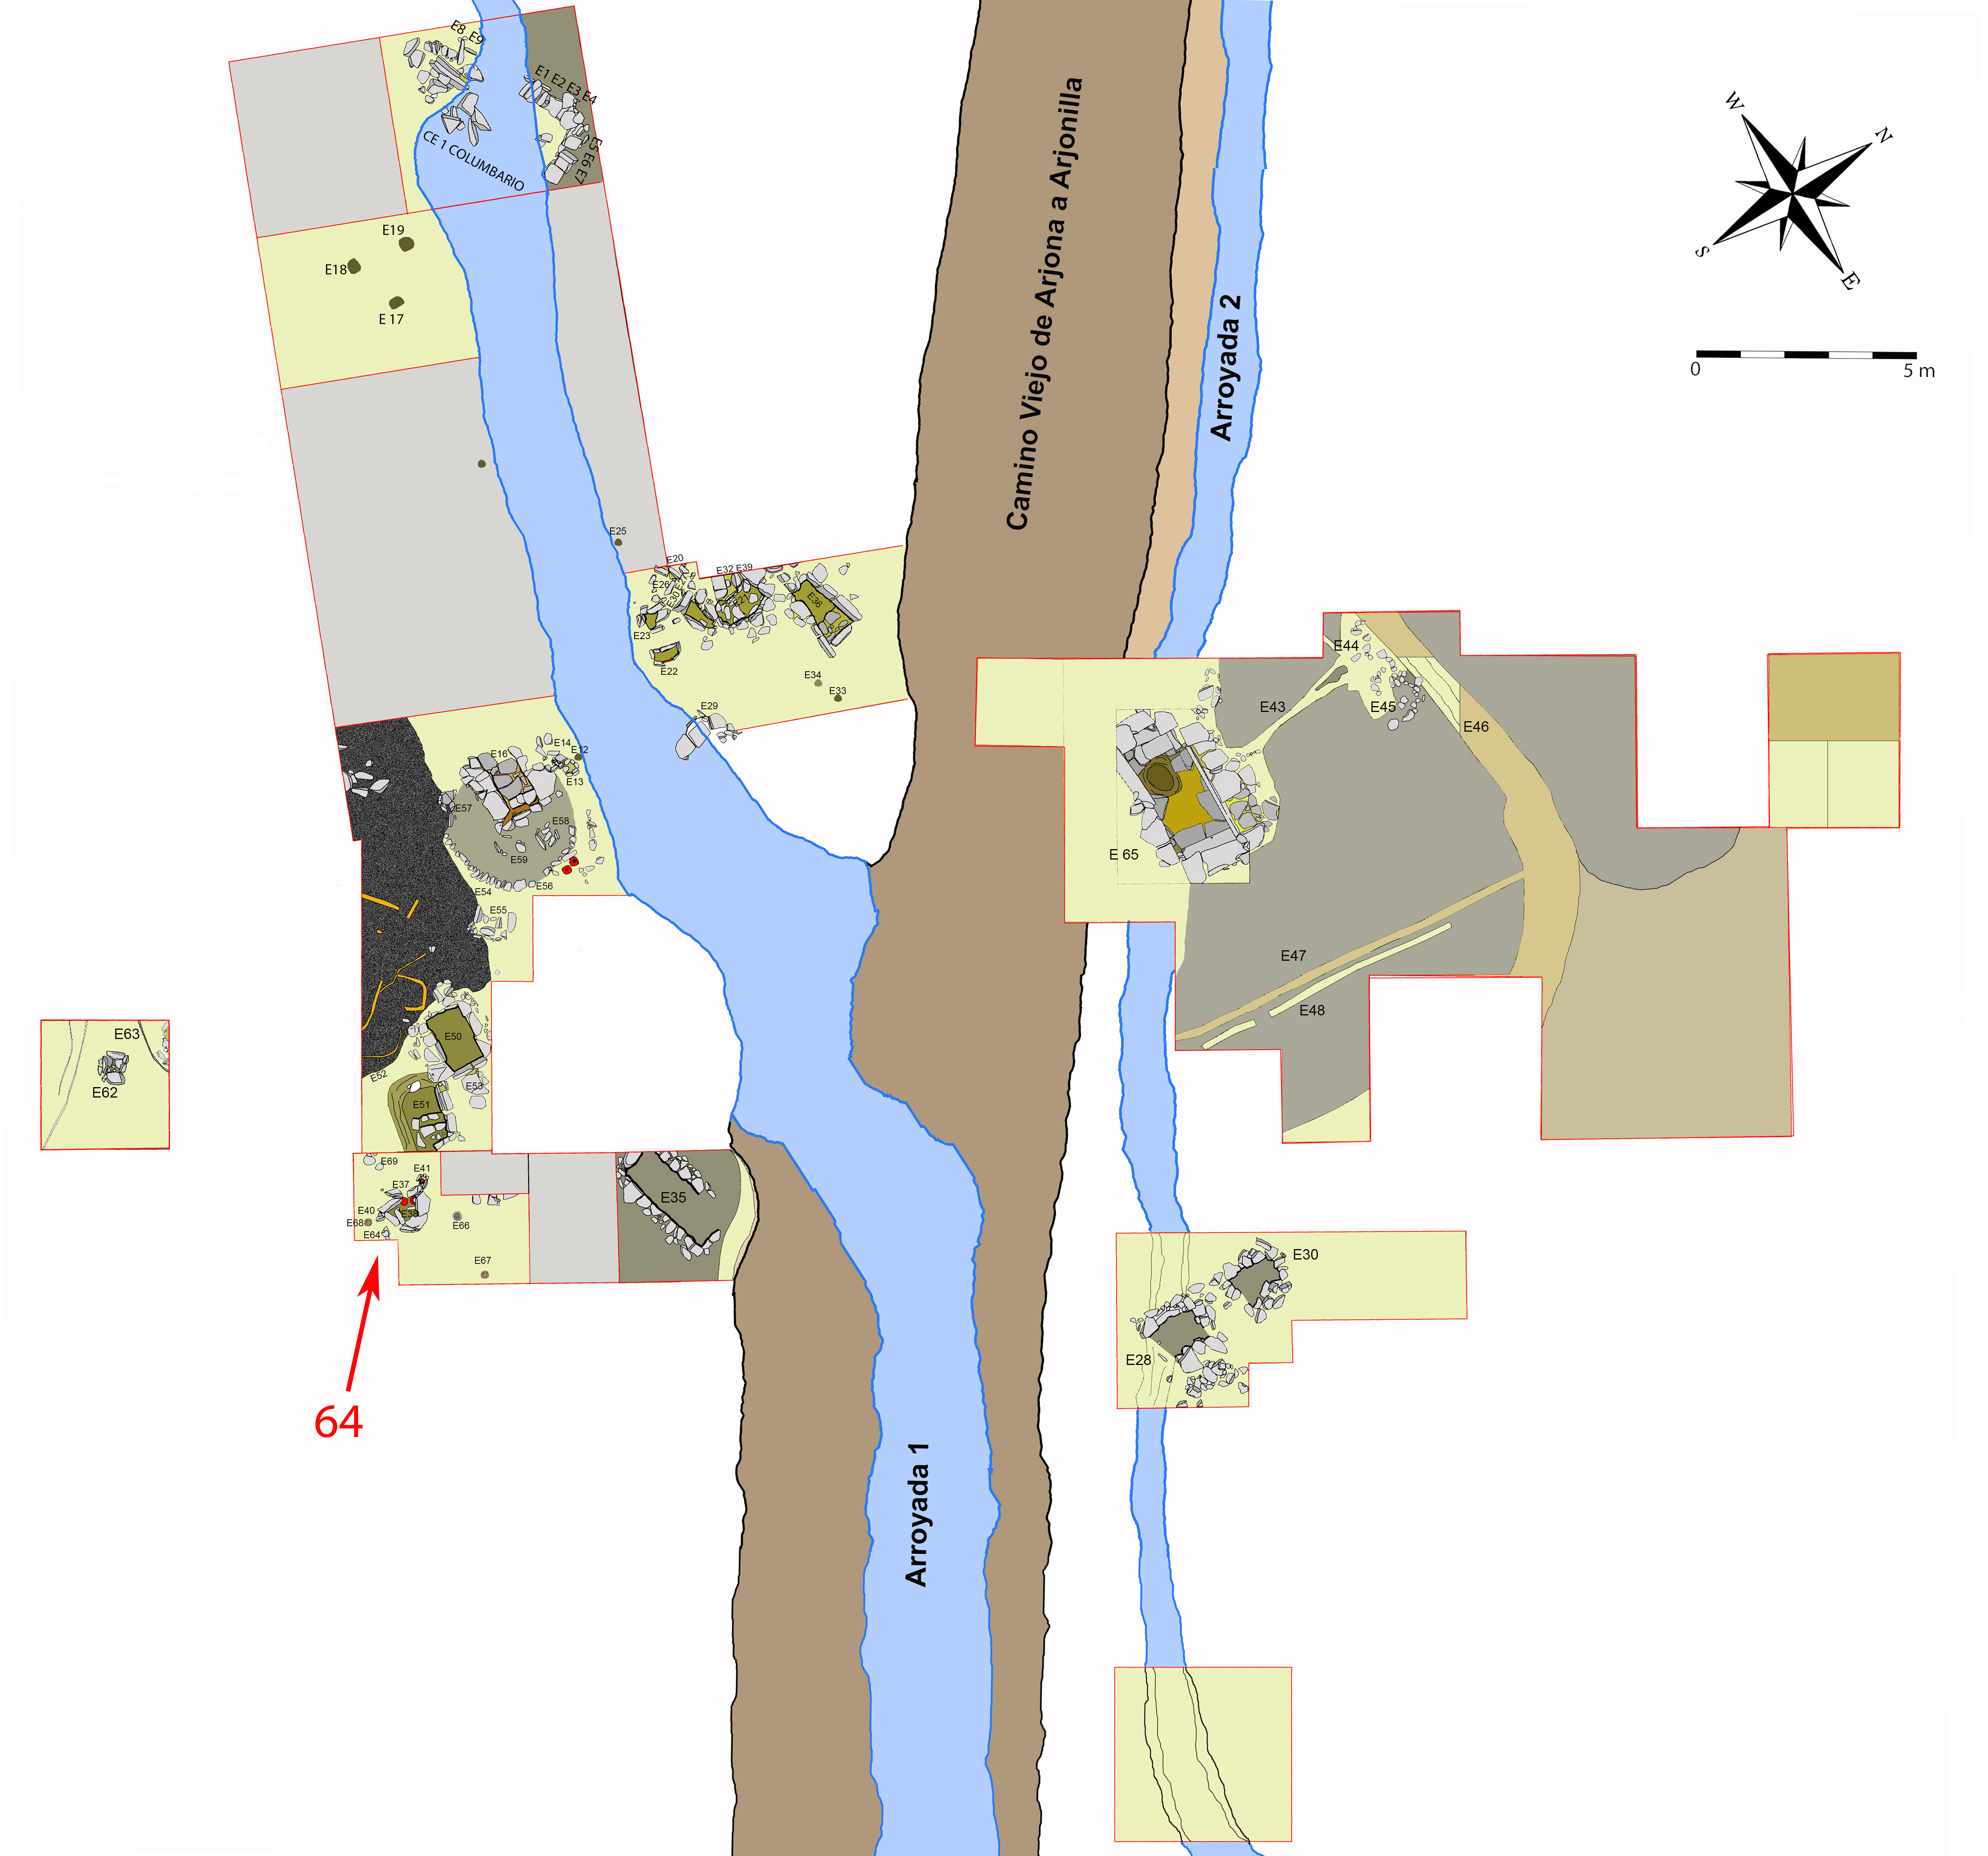 Plano general de la necrópolis de Piquía y localización de la tumba 64